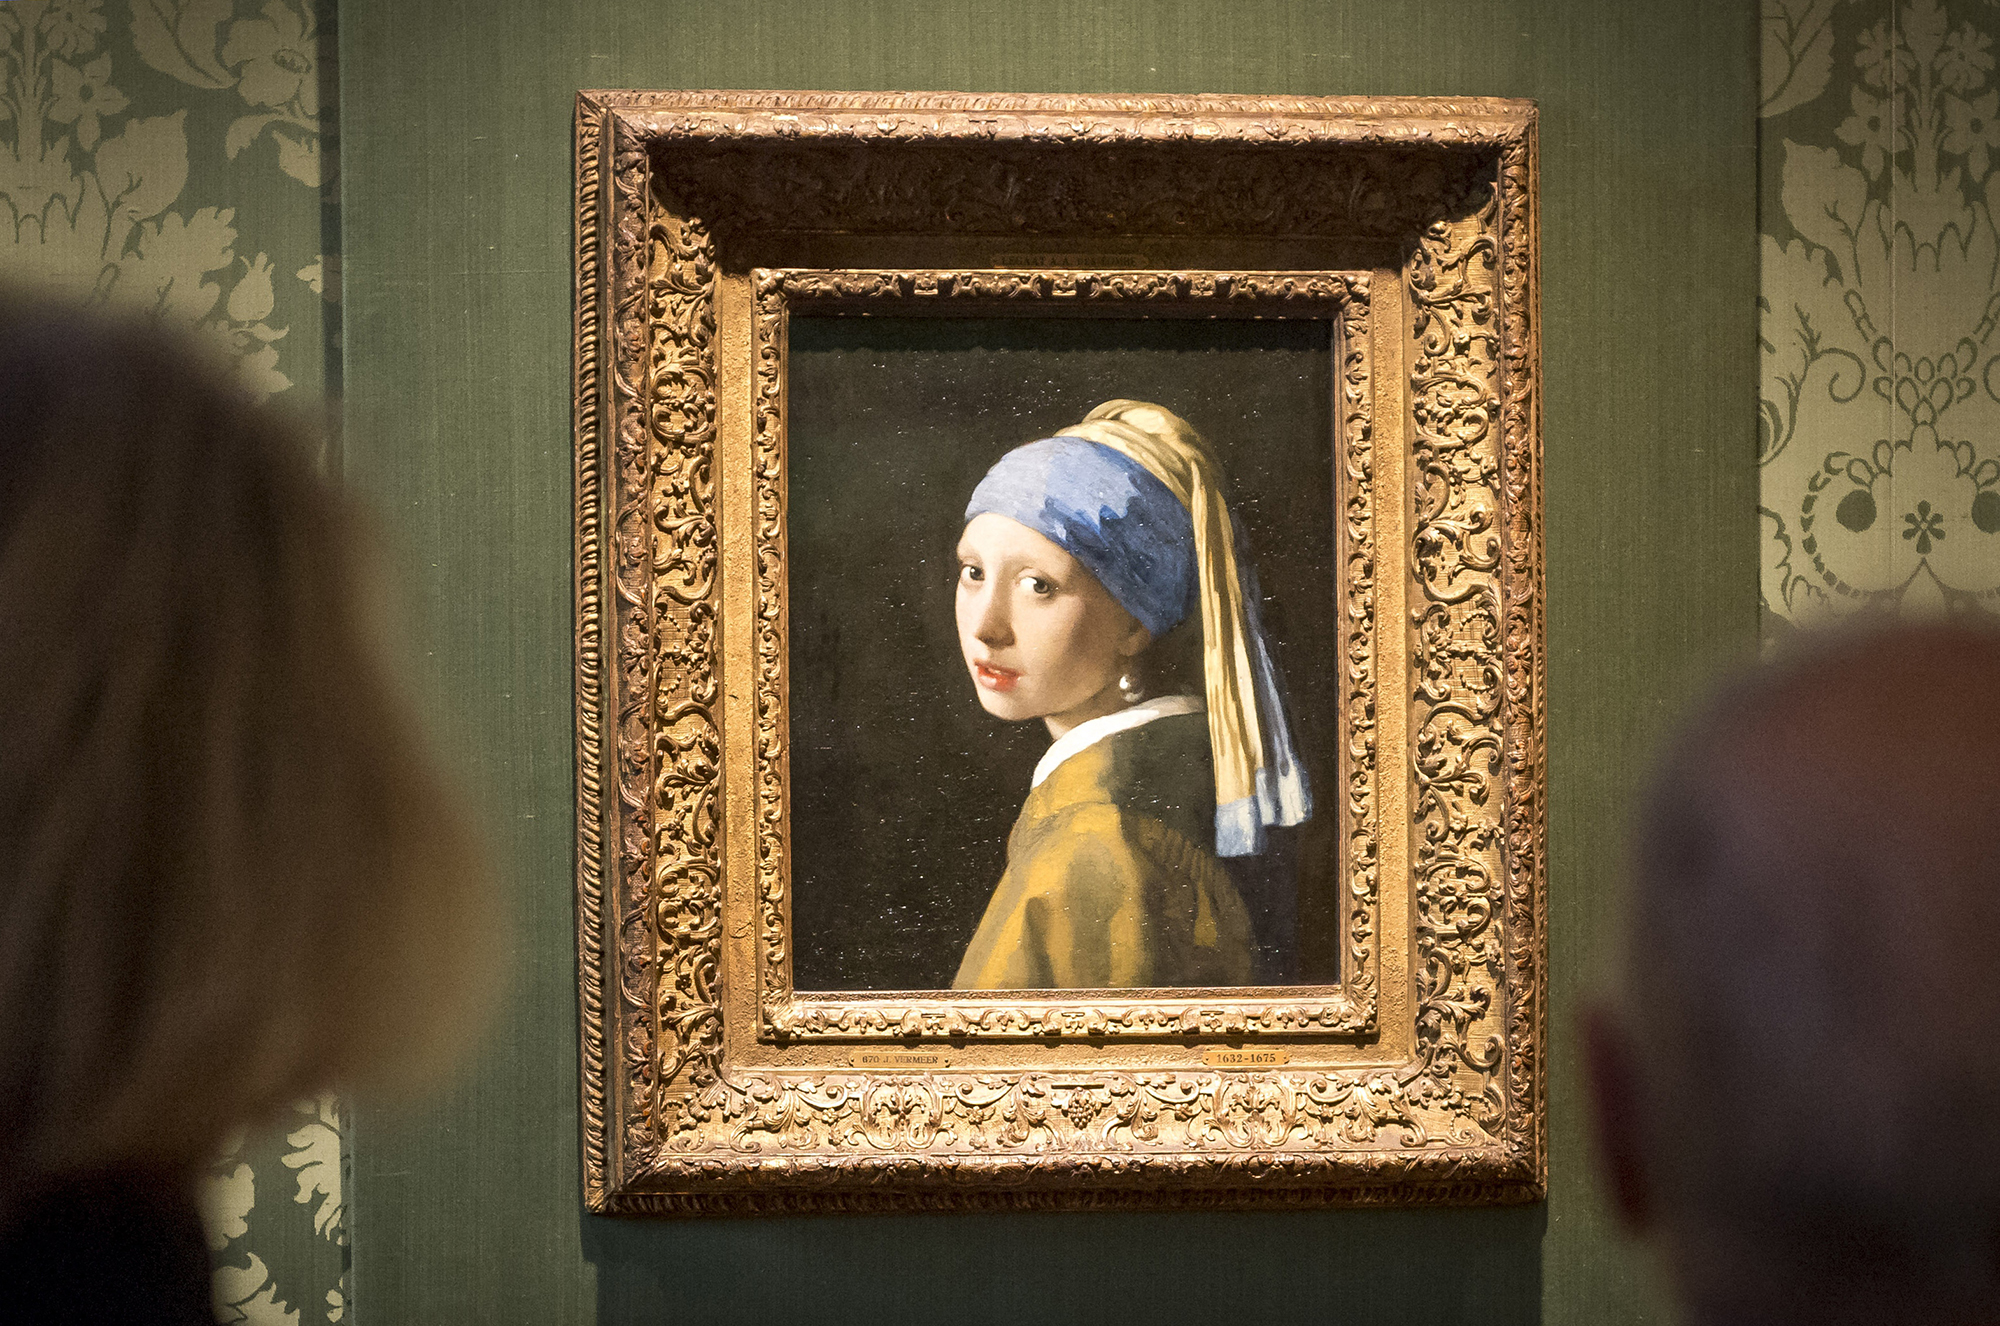 Gemälde "Das Mädchen mit dem Perlenohrring" (Bild: Lex van Lieshout /ANP/AFP)